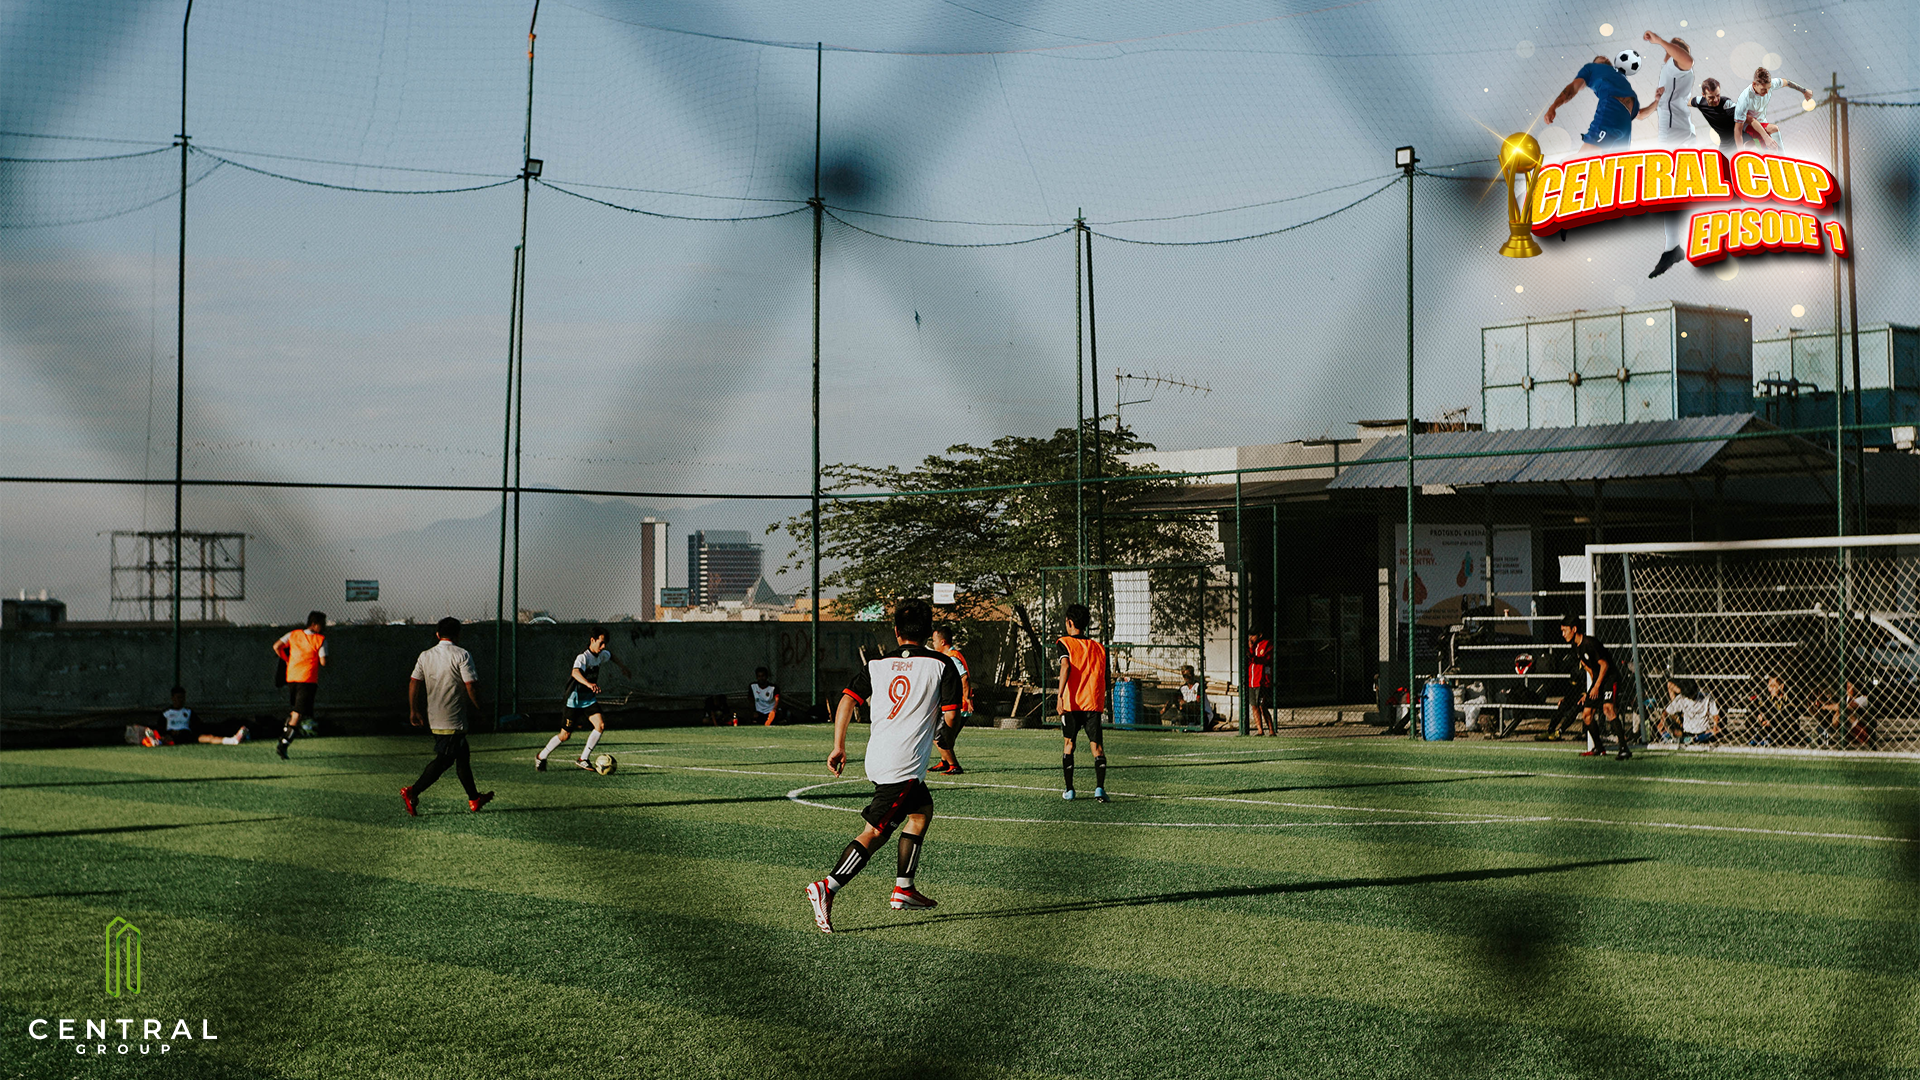 Rayakan Semangat Kemerdekaan, Central Group Mengadakan Turnamen Mini Soccer – Episode 1